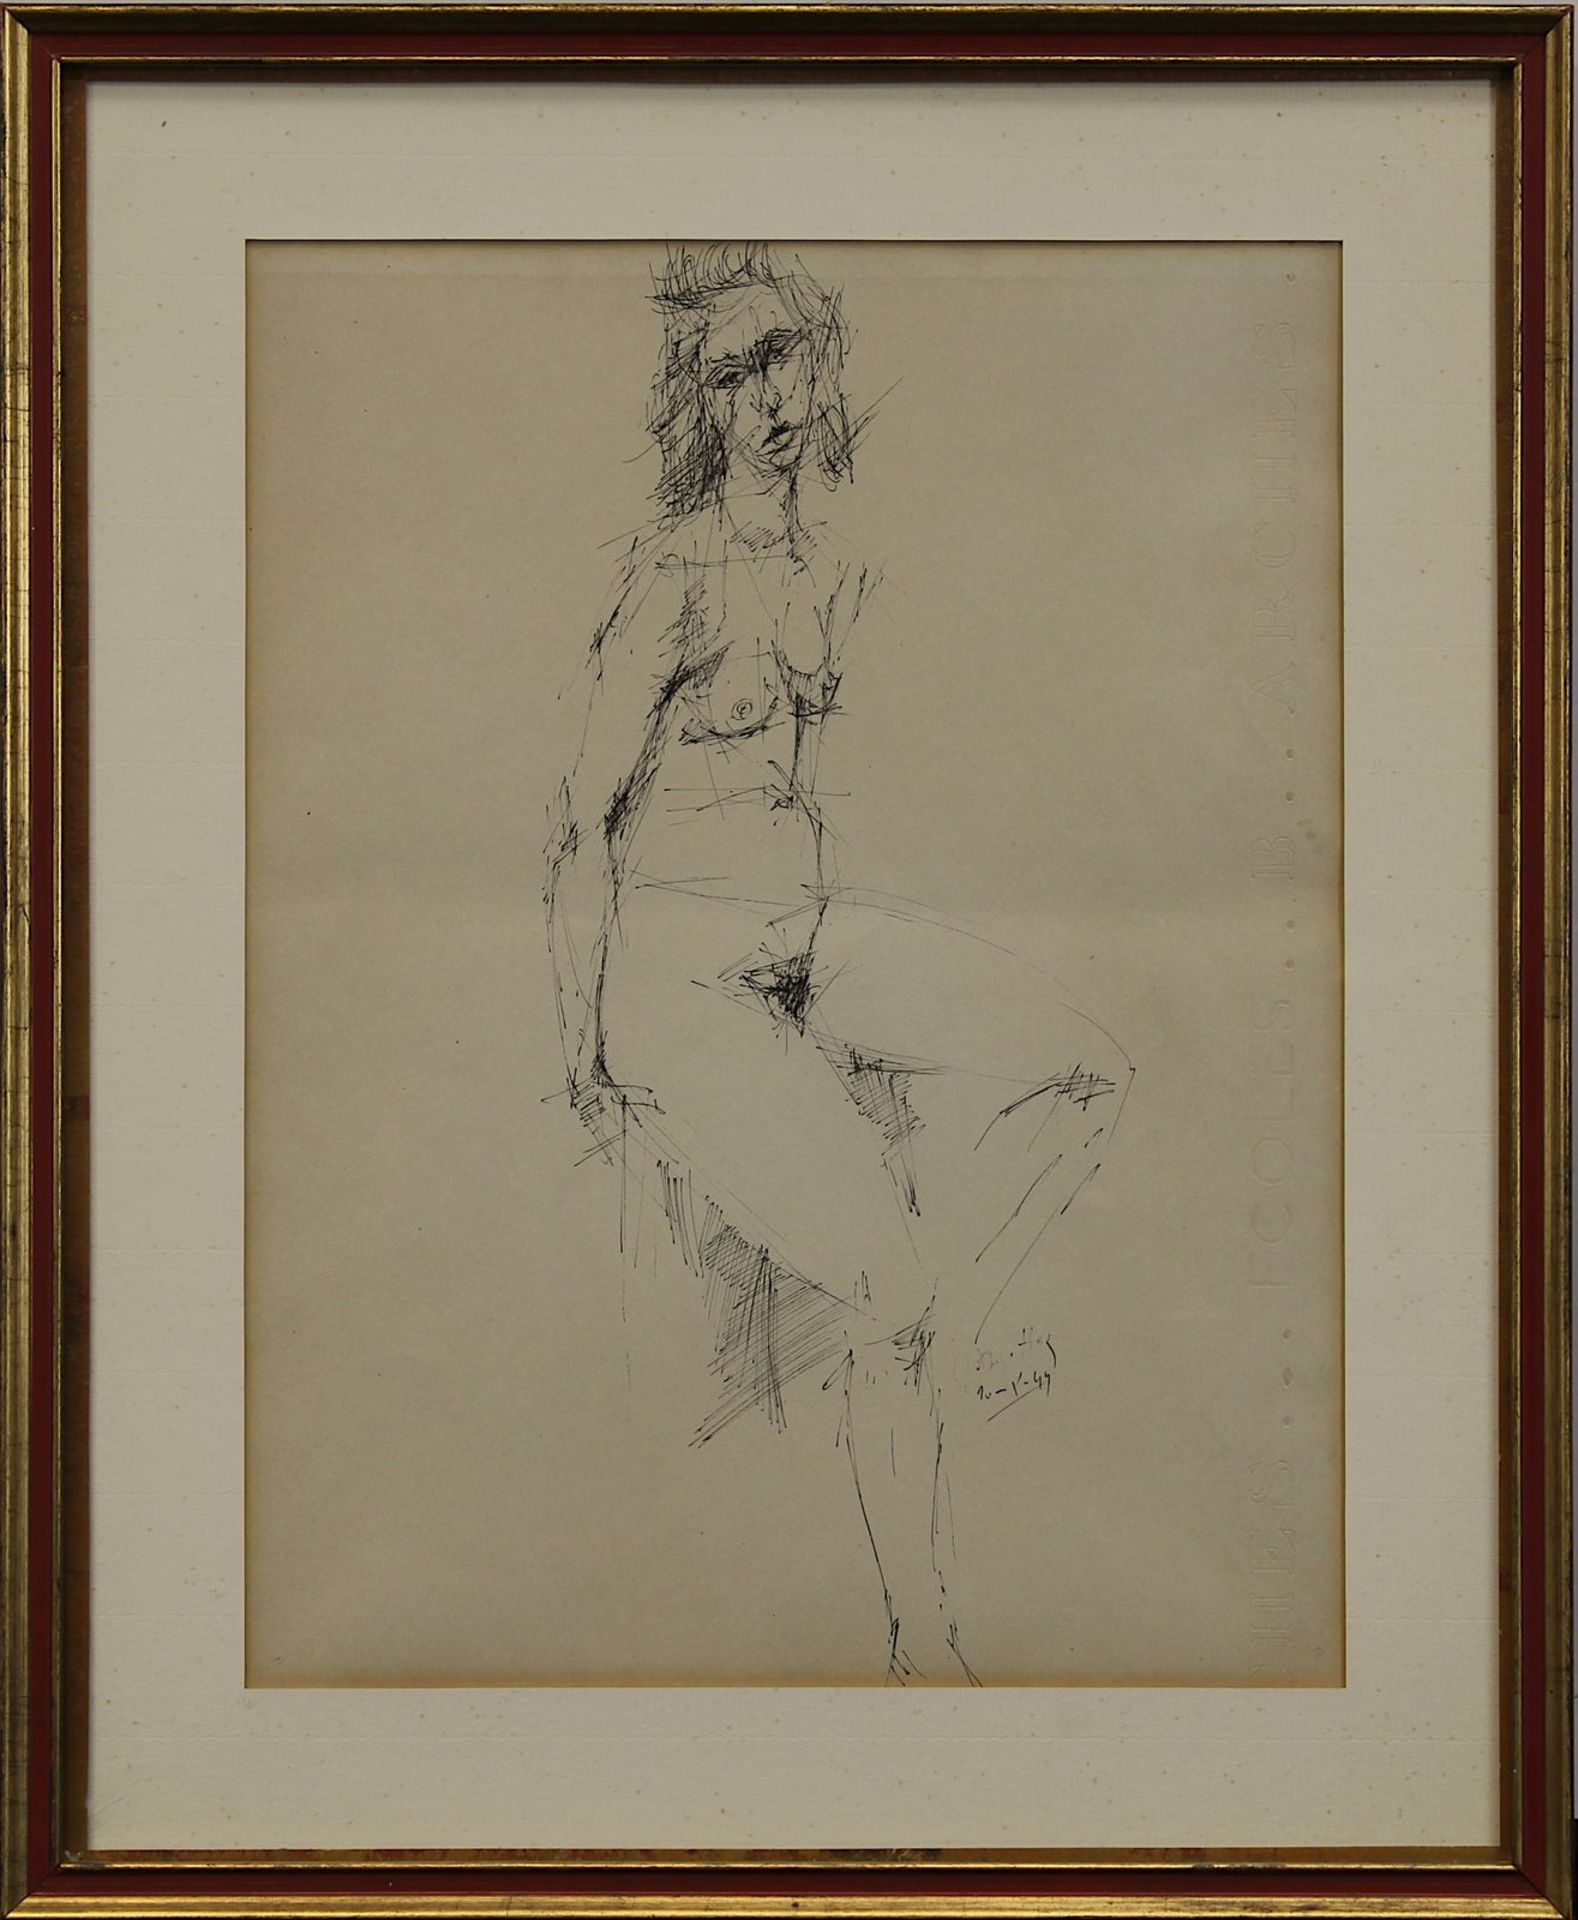 Degottex, Jean (Sathonay-Camp/Rhone 1918 - 1988 Paris), sitzender weiblicher Akt, Tuschzeichnung,